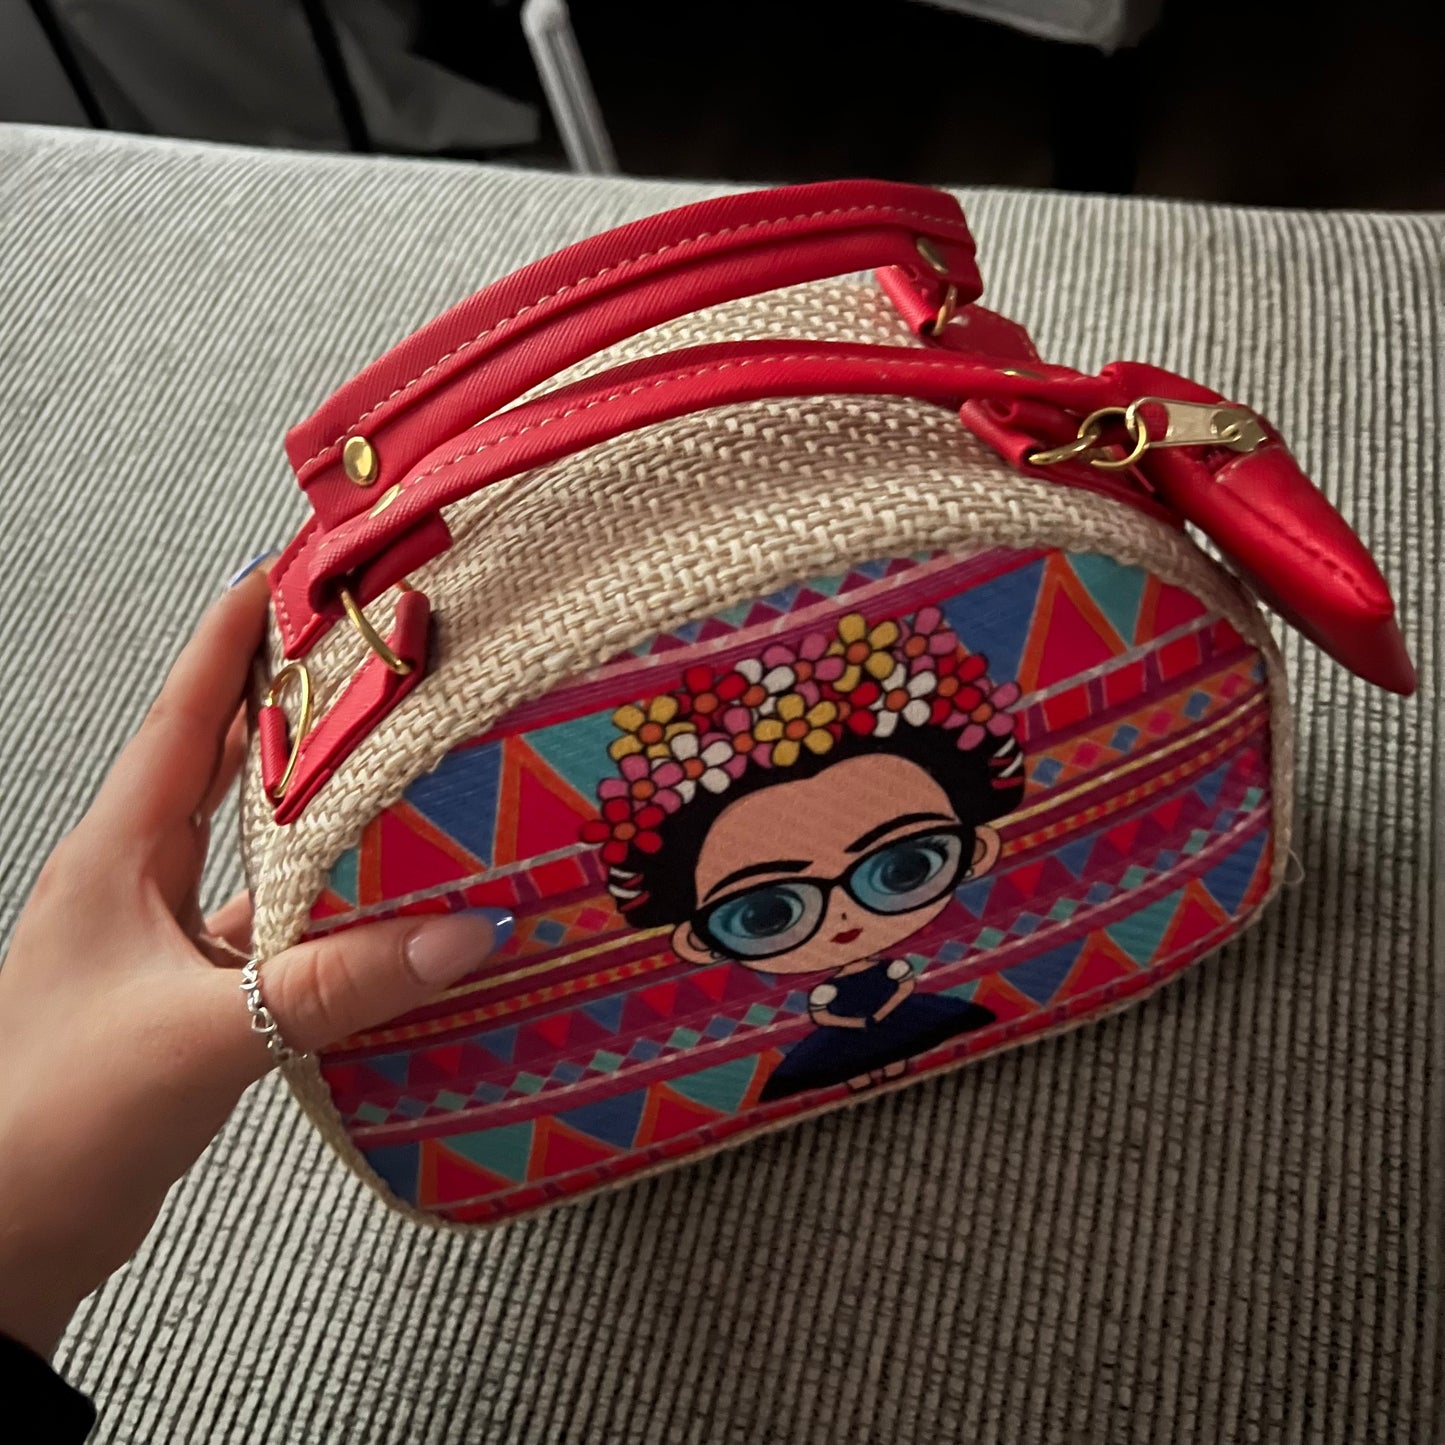 Frida Kahlo Small Artisan Bag